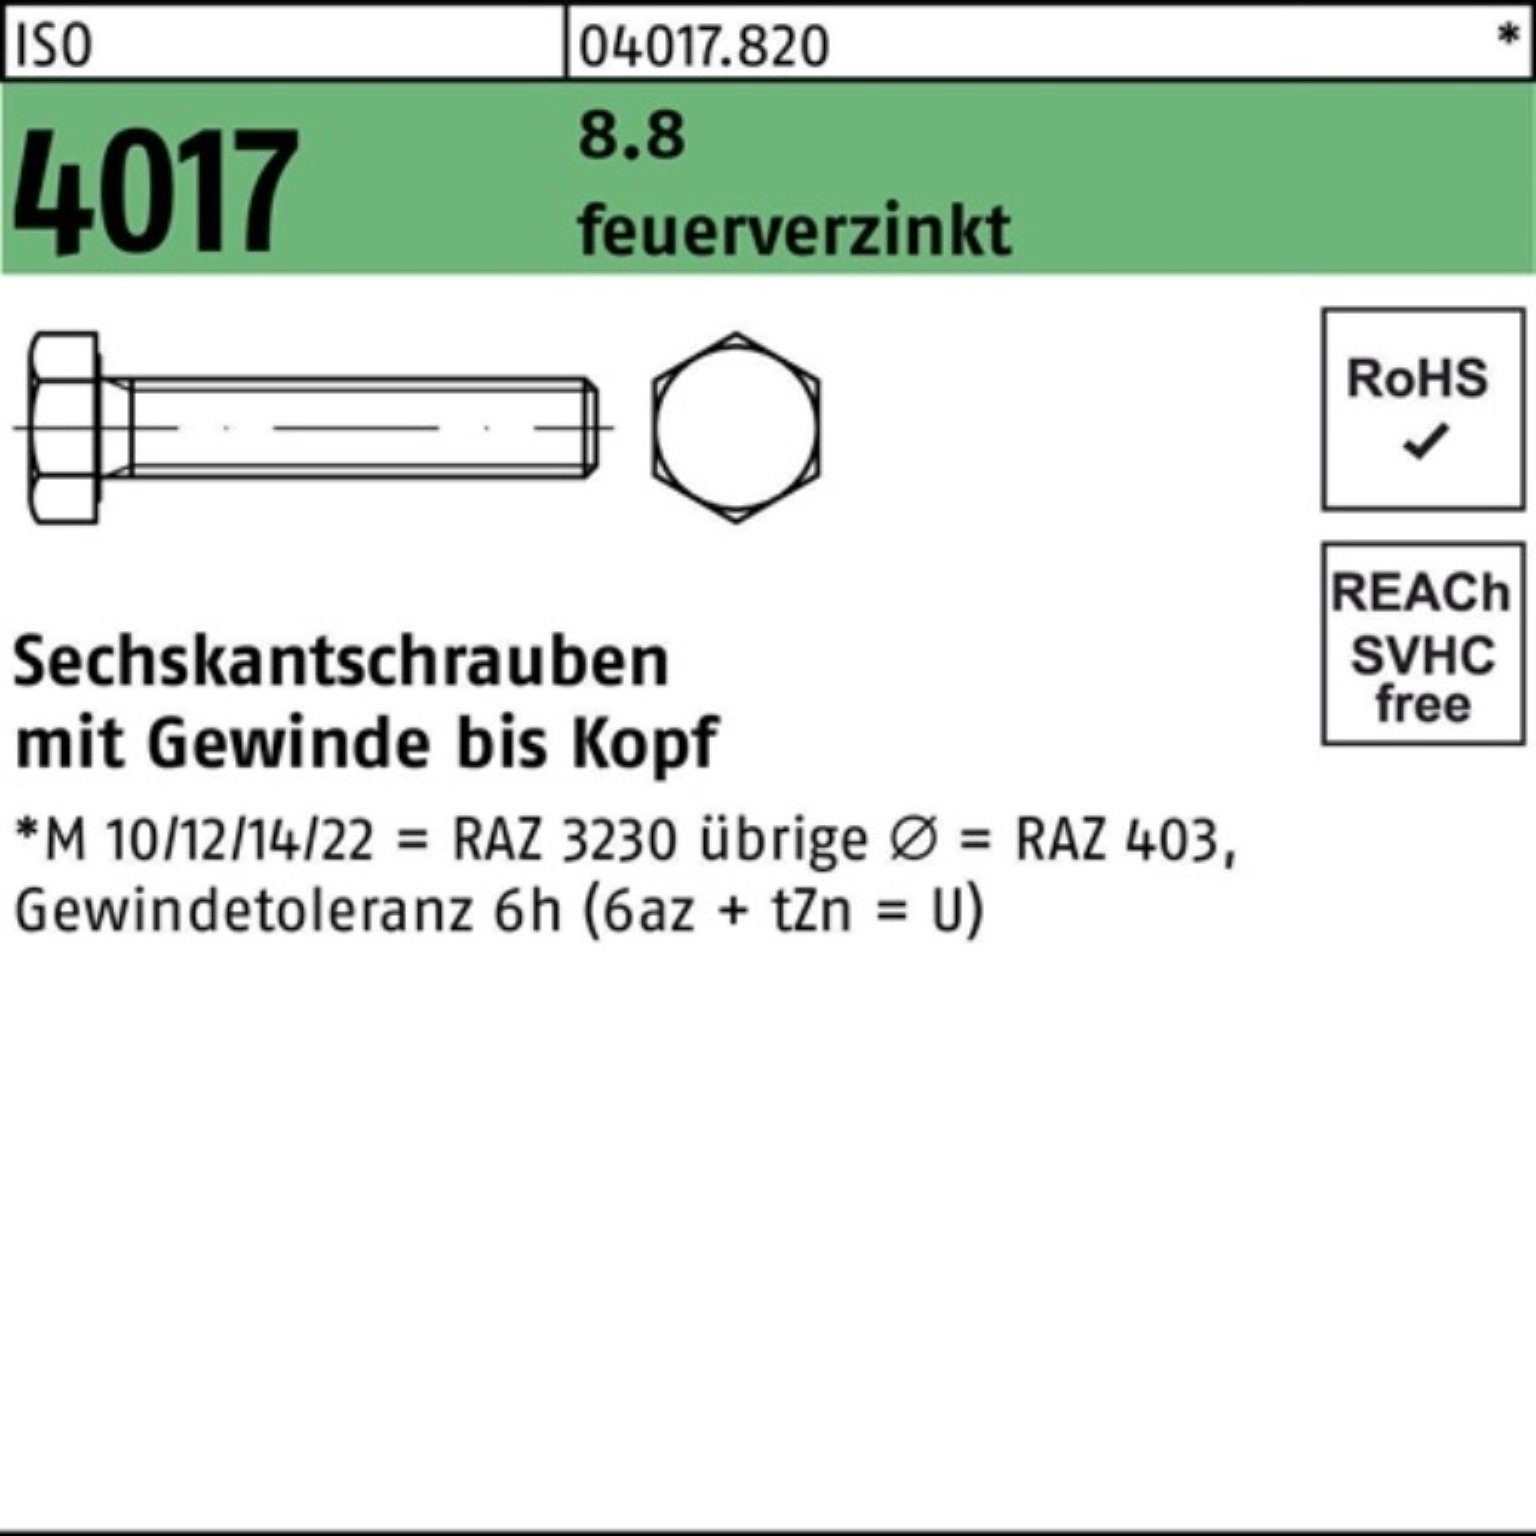 Bufab Sechskantschraube 200er Pack Sechskantschraube ISO 4017 VG M10x 16 8.8 feuerverz. 200 St